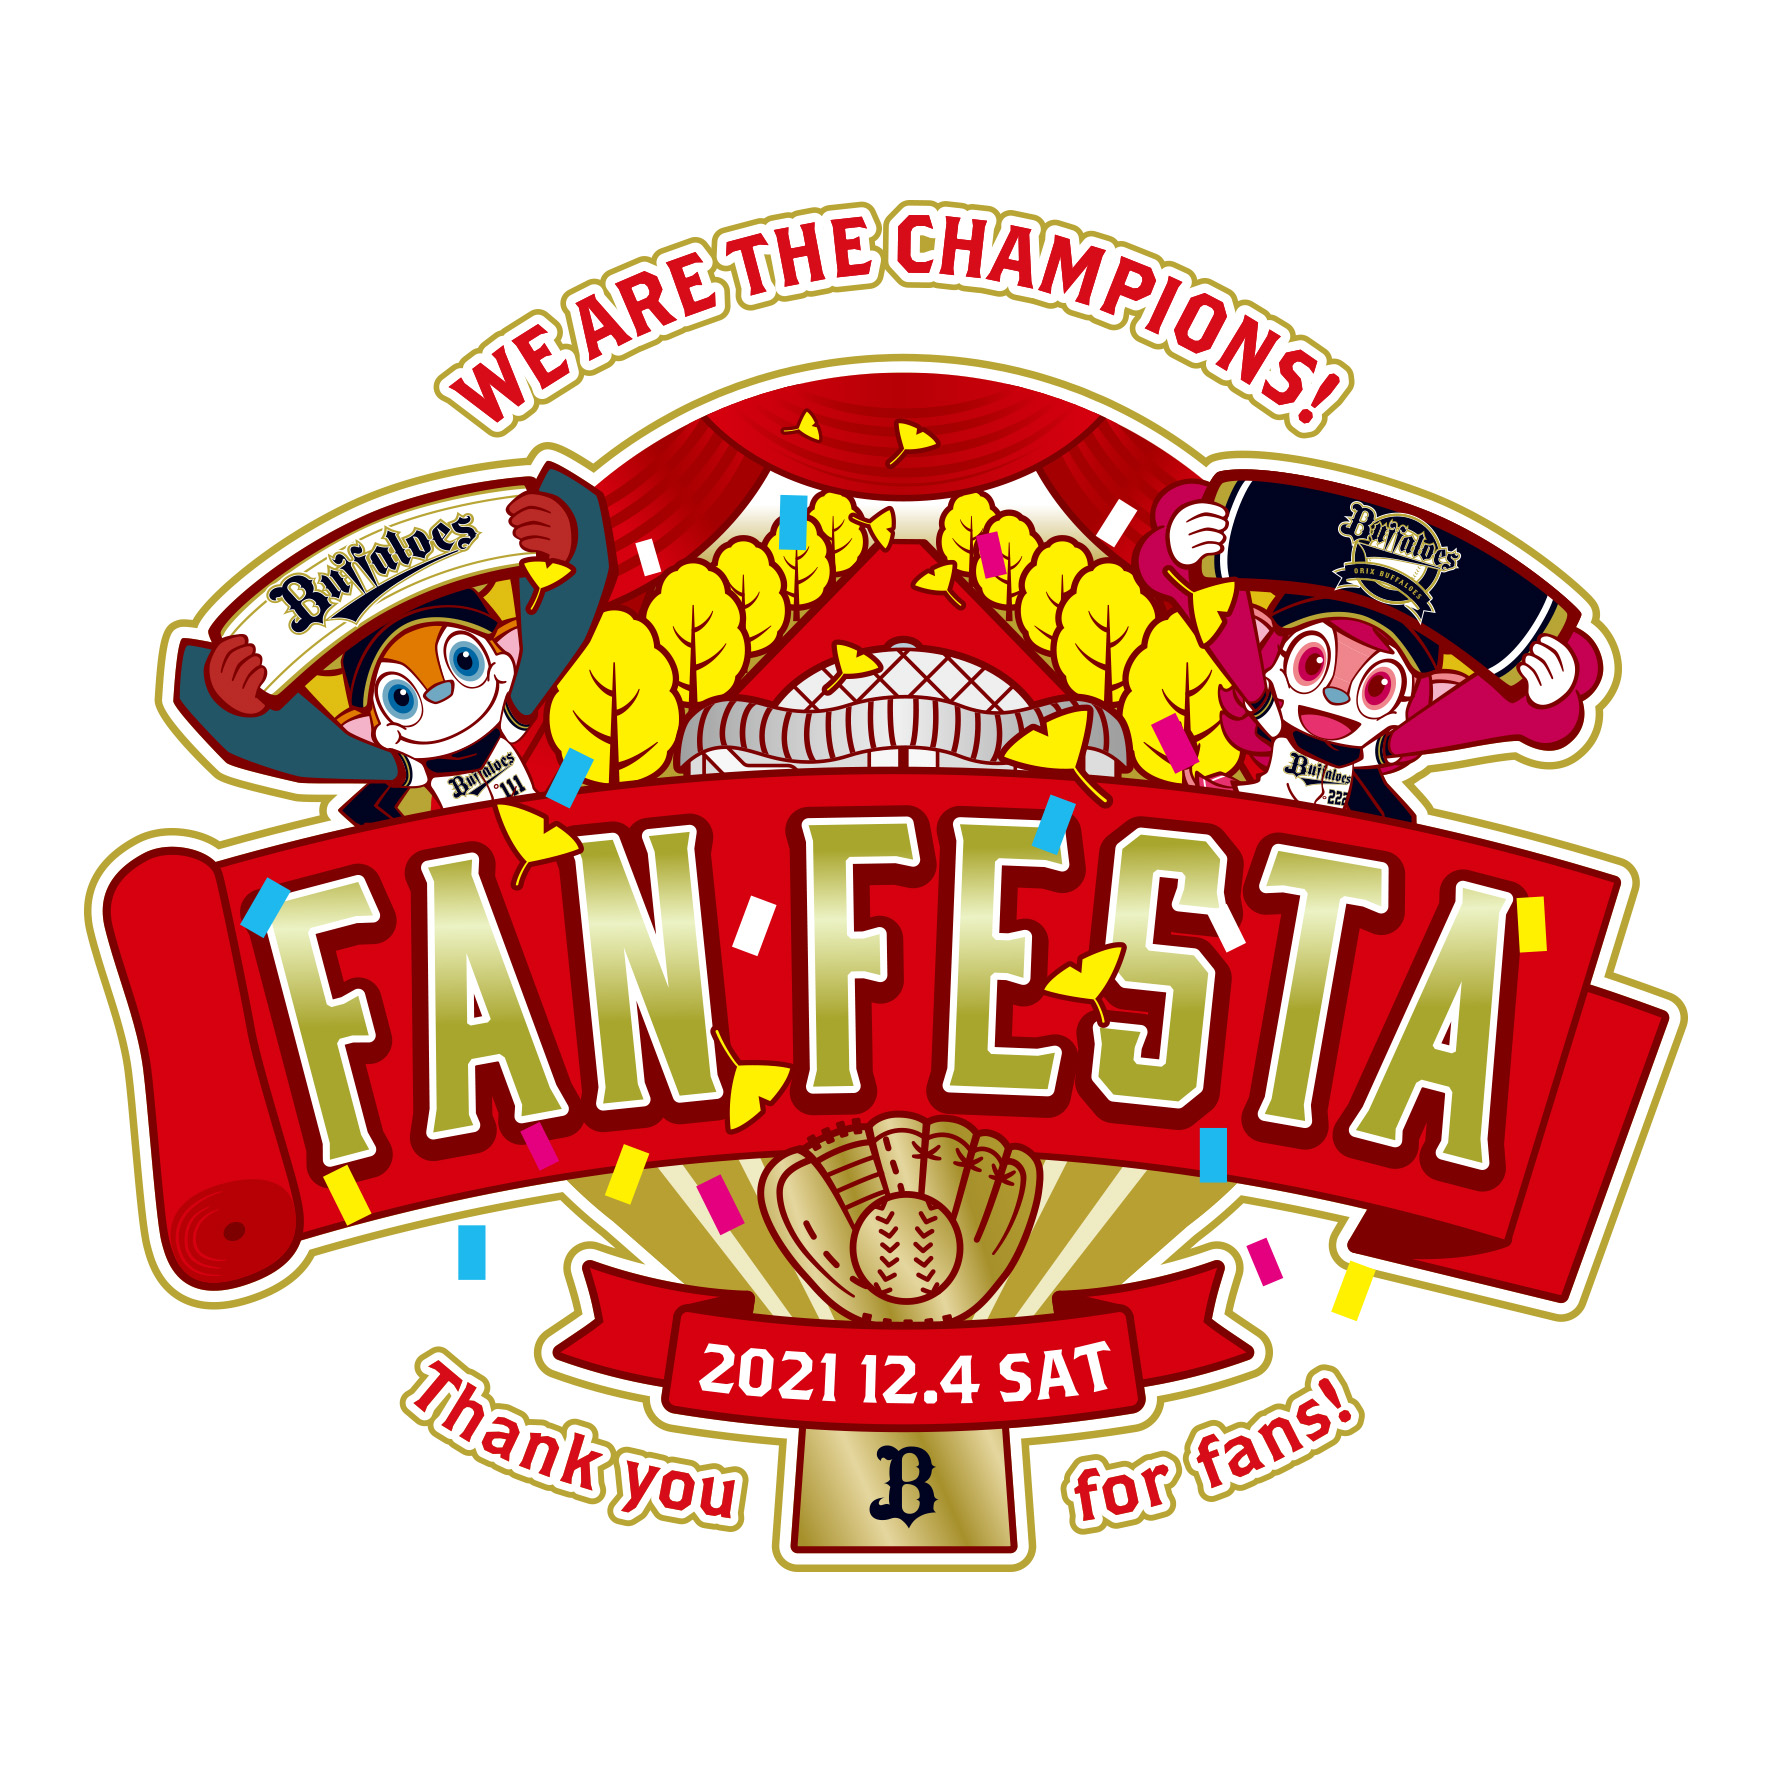 我们将为您提供歐力士野牛 球迷感谢活动“Bs Fan-Festa 2021”的门票